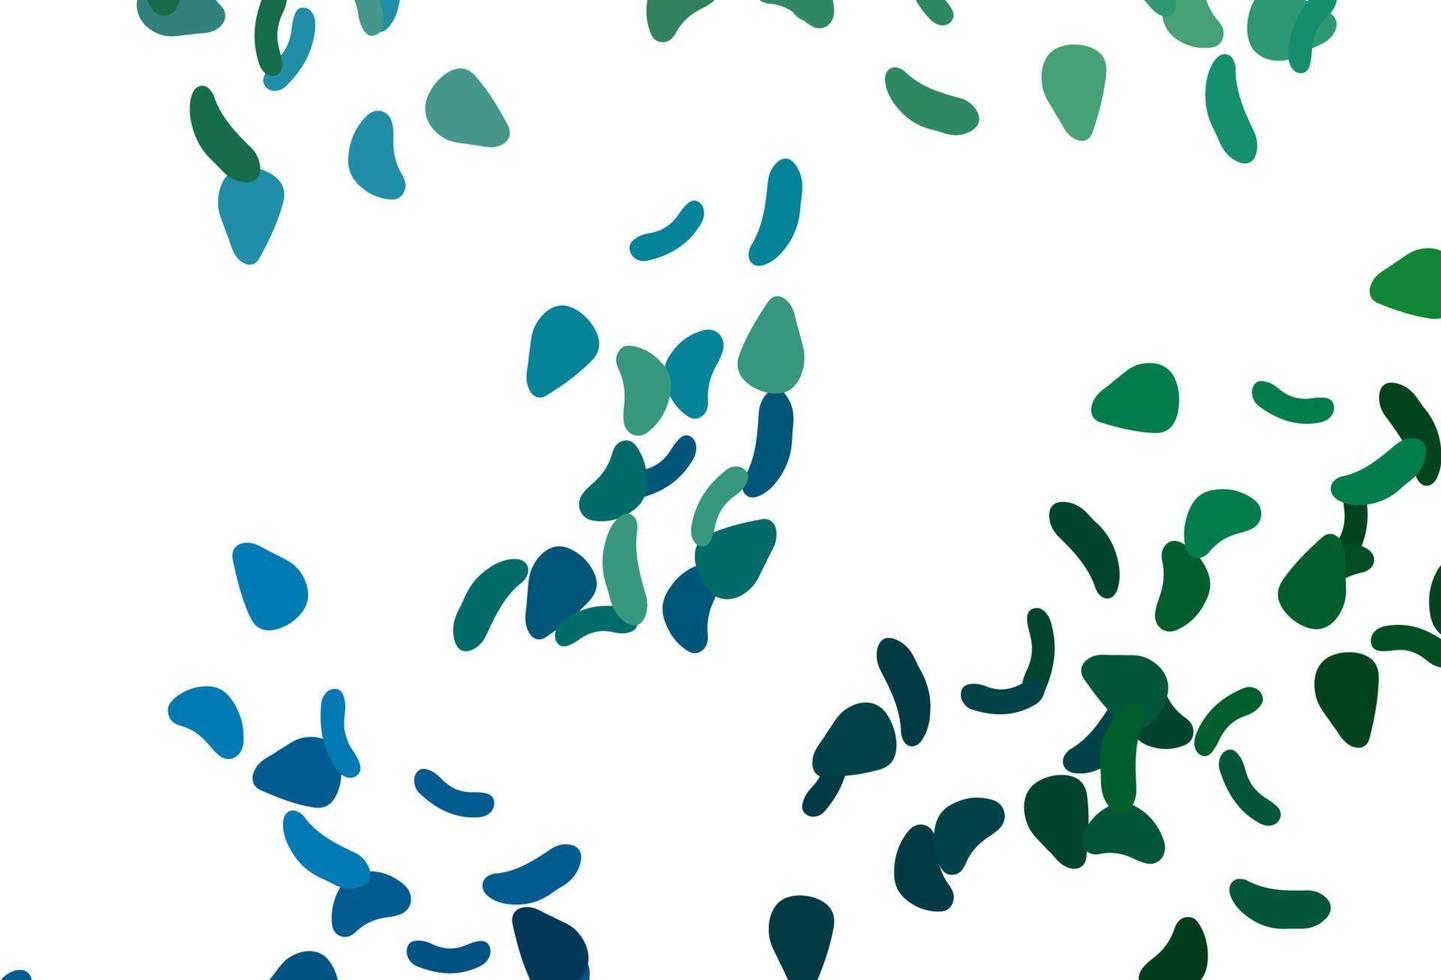 pano de fundo azul claro e verde do vetor com formas abstratas.